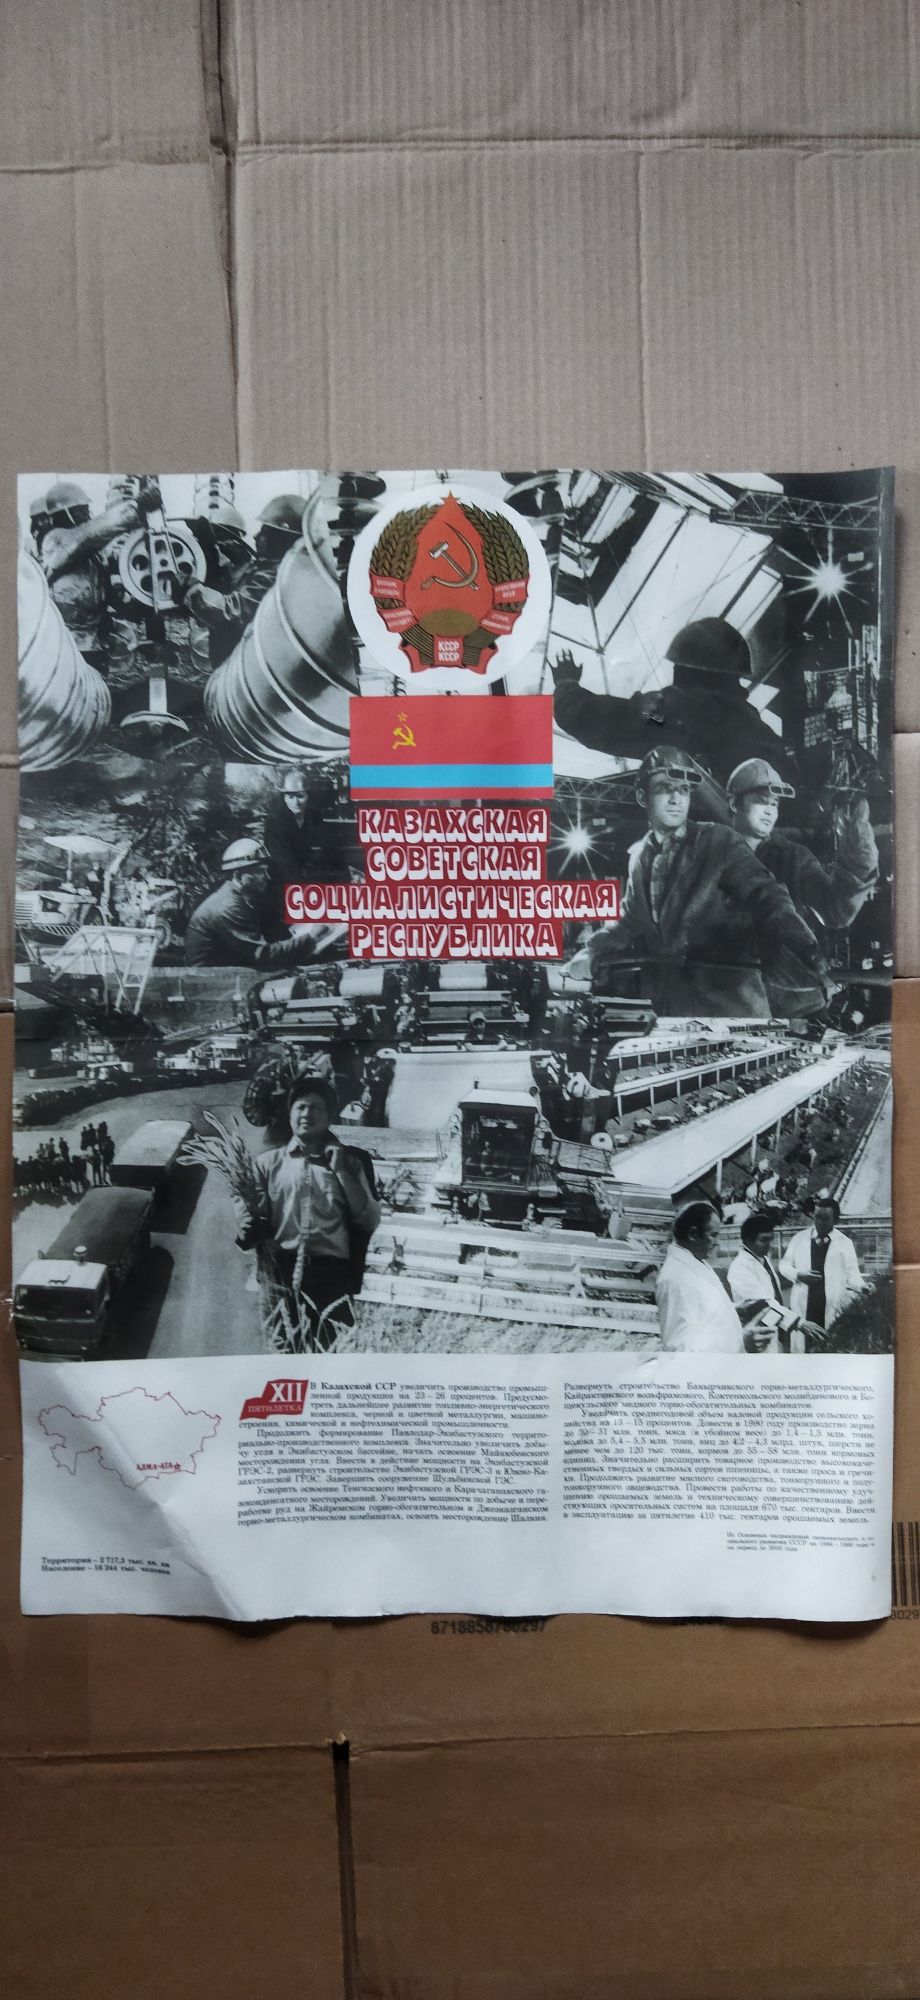 Плакаты советские социалистической республики